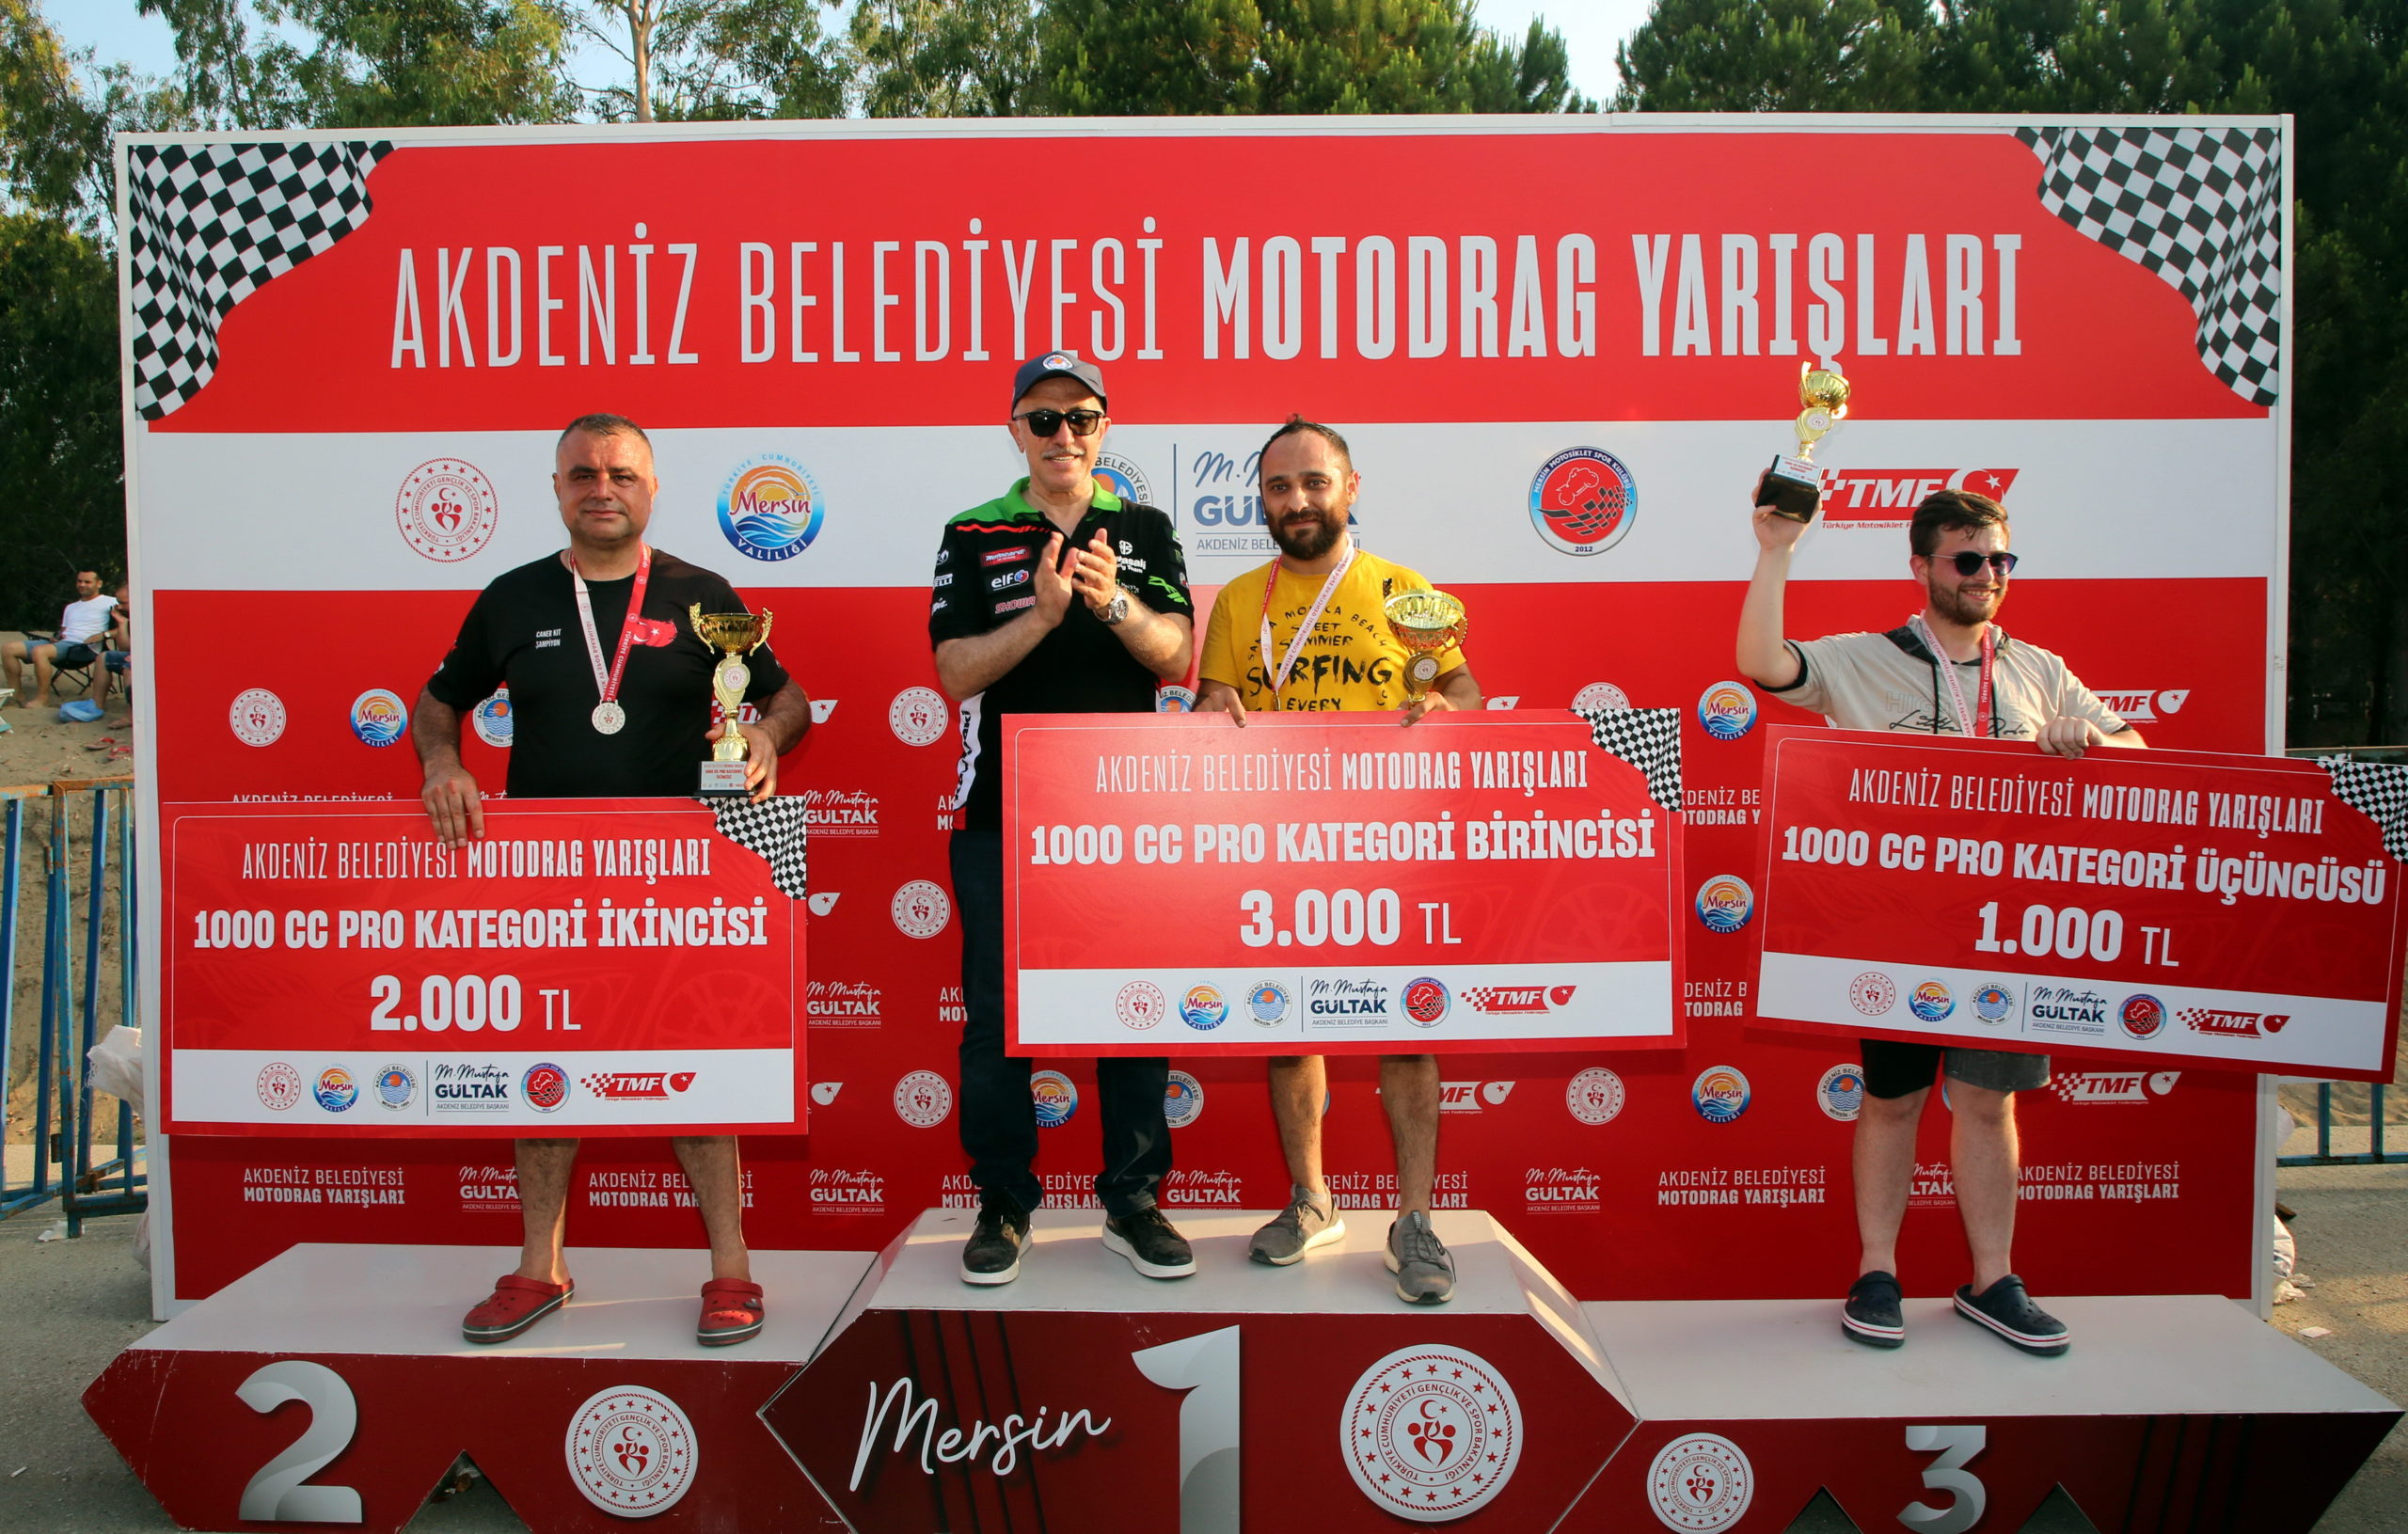  Akdeniz Belediyesi, Motosiklet Tutkunlarını ‘Motodrag’ Yarışlarında Buluşturdu